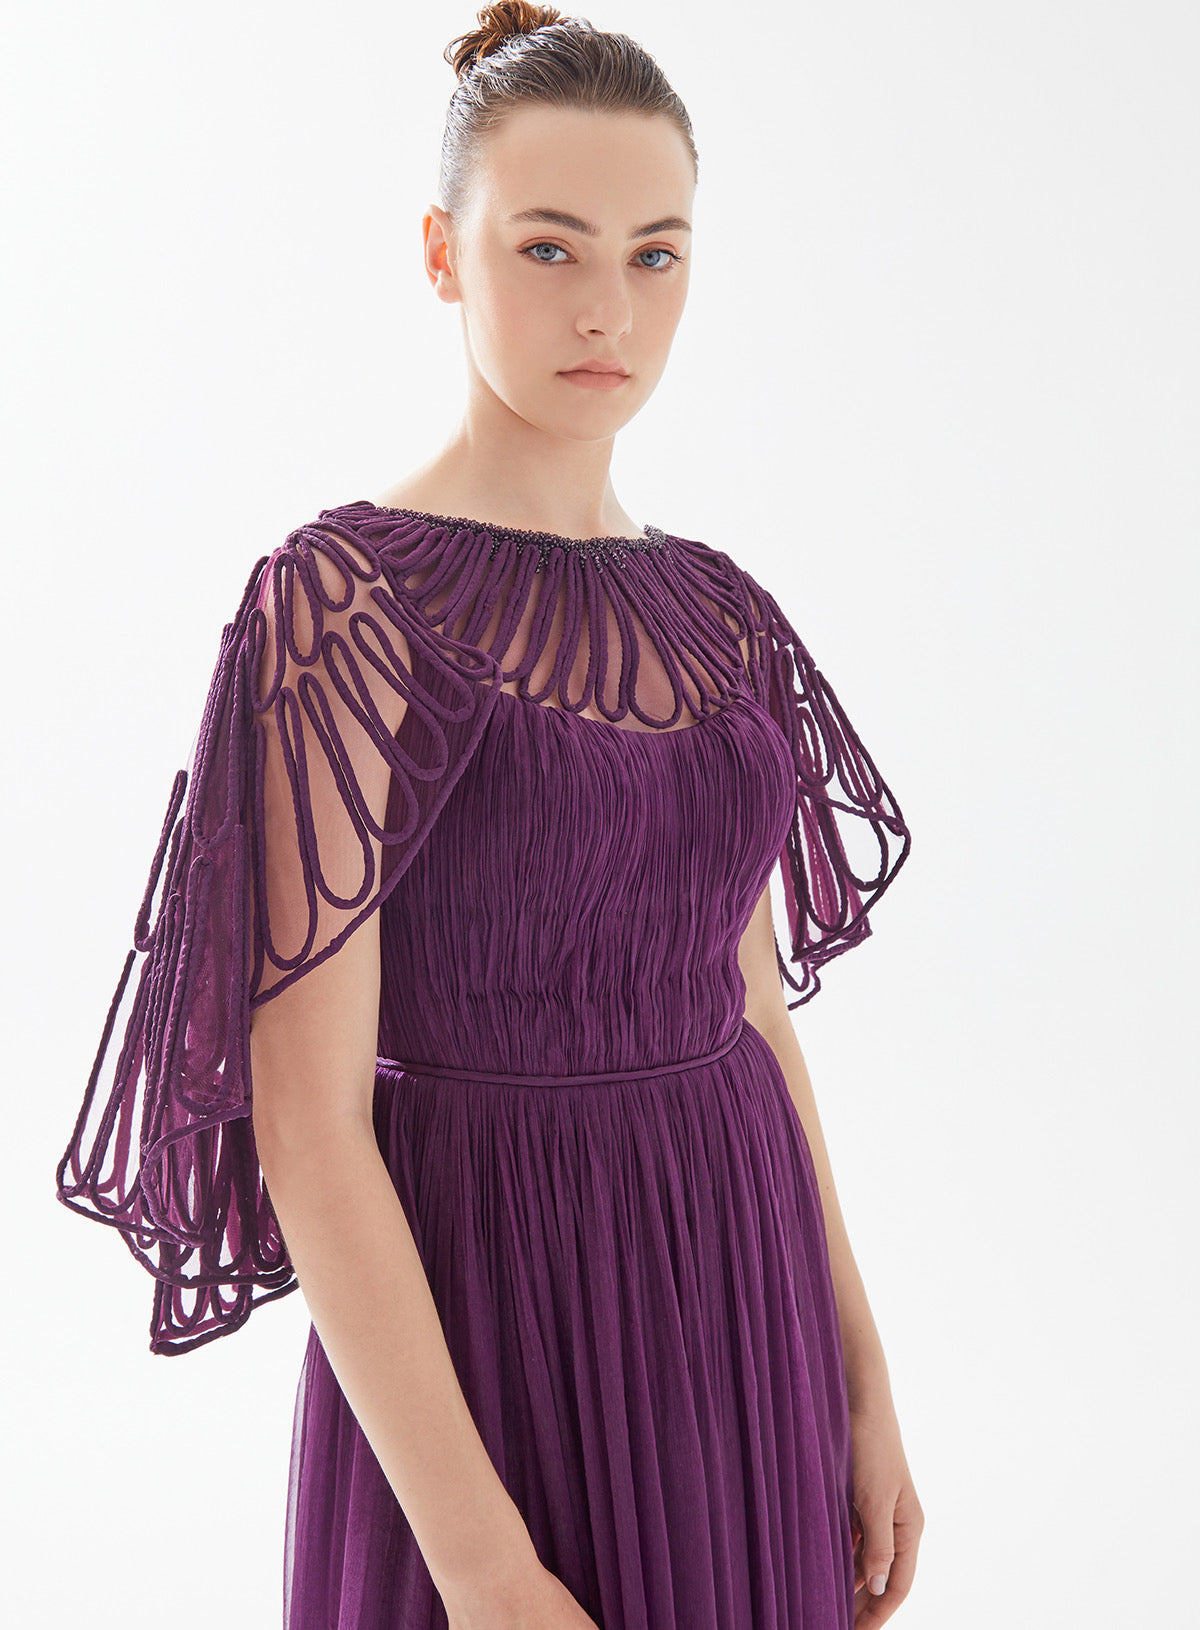 Tarik Ediz Plumbella   Futuristic Cape Dress with Pleats Gown